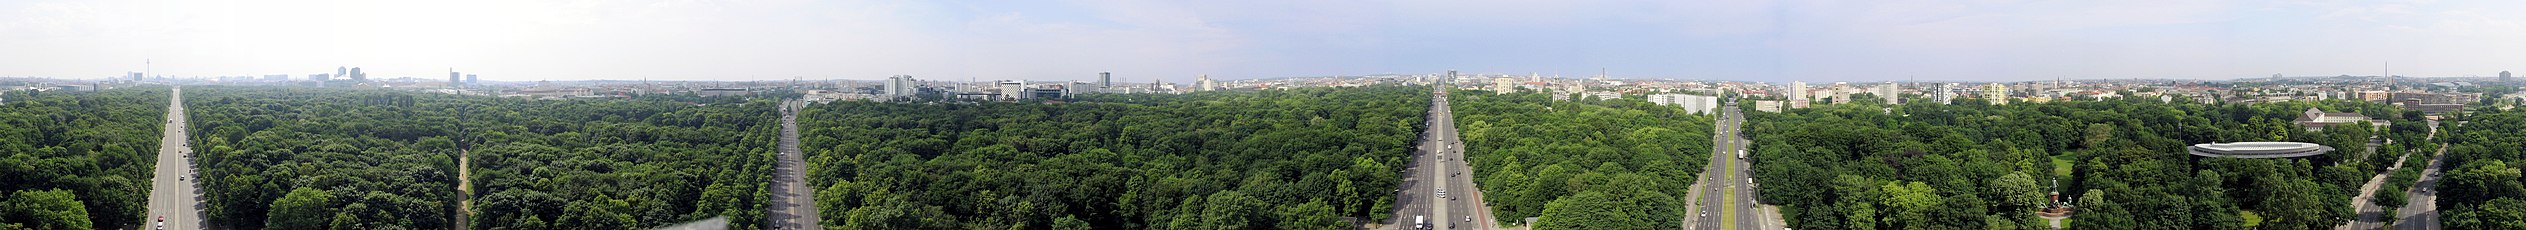 一幅三百六十度全景照片，拍摄地点在柏林蒂尔加滕公园中的胜利纪念柱上，俯瞰整个蒂尔加滕公园。主体绿色，从左到右共有五段街道。